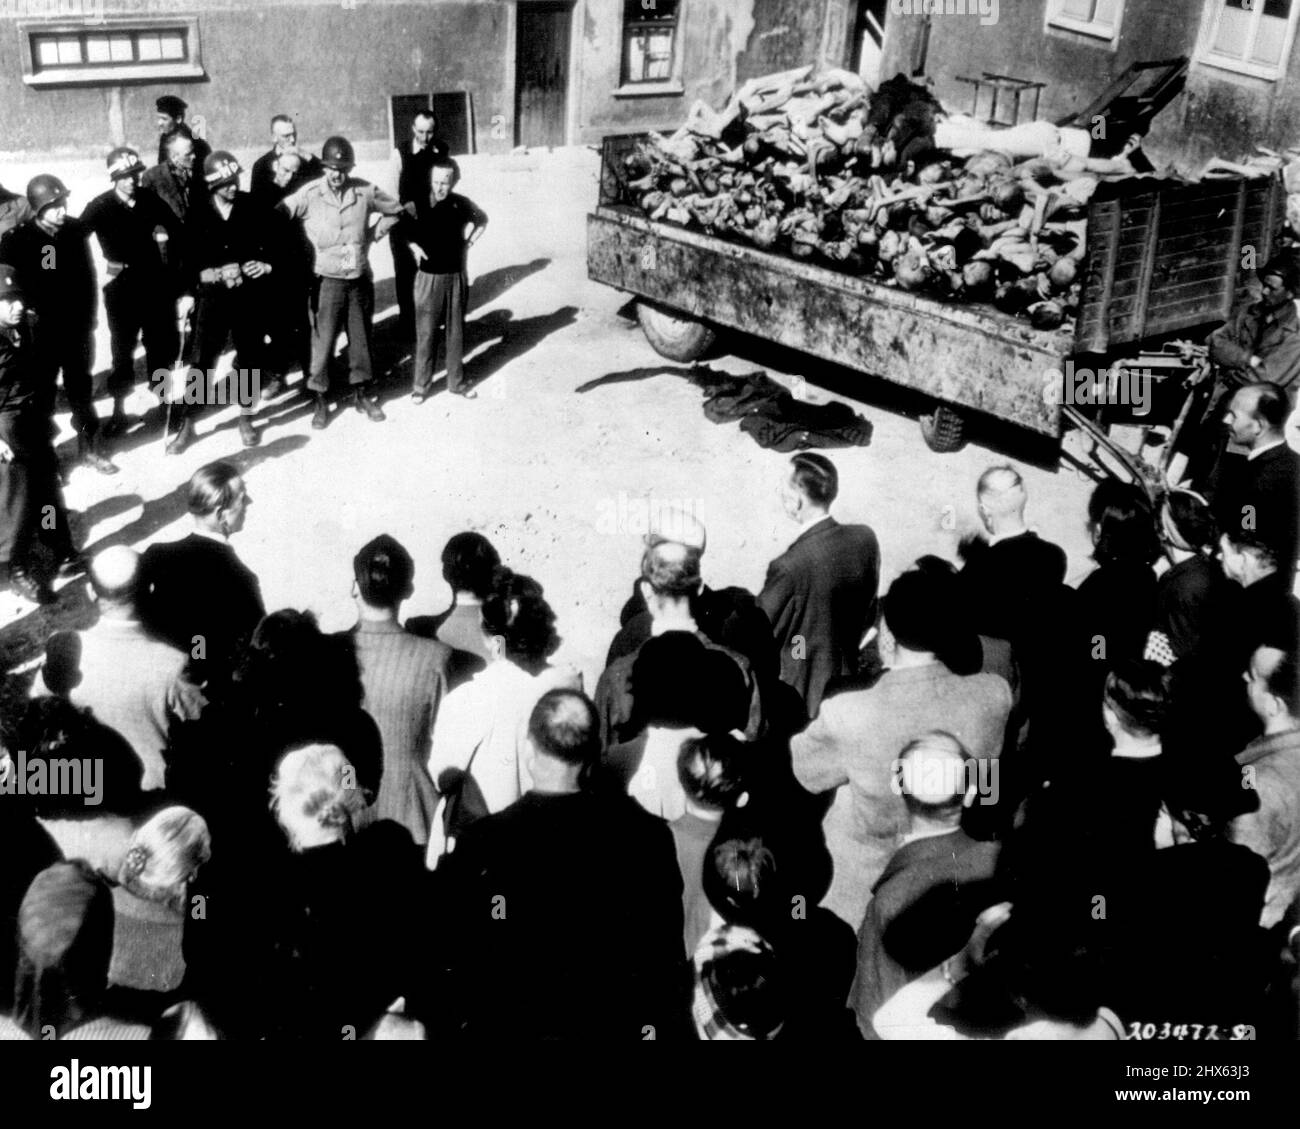 Deutsche Zivilisten sehen Leichenladung - Zivilisten in der deutschen Stadt Weimar werden von der US 3. Army Military Police (linker Hintergrund) gezwungen, eine Ladung toter Gefangener in Buchenwald, dem nahe gelegenen Nazi-Greuellager, zu sehen. 25. April 1945. (Foto von AP Wirephoto). Stockfoto